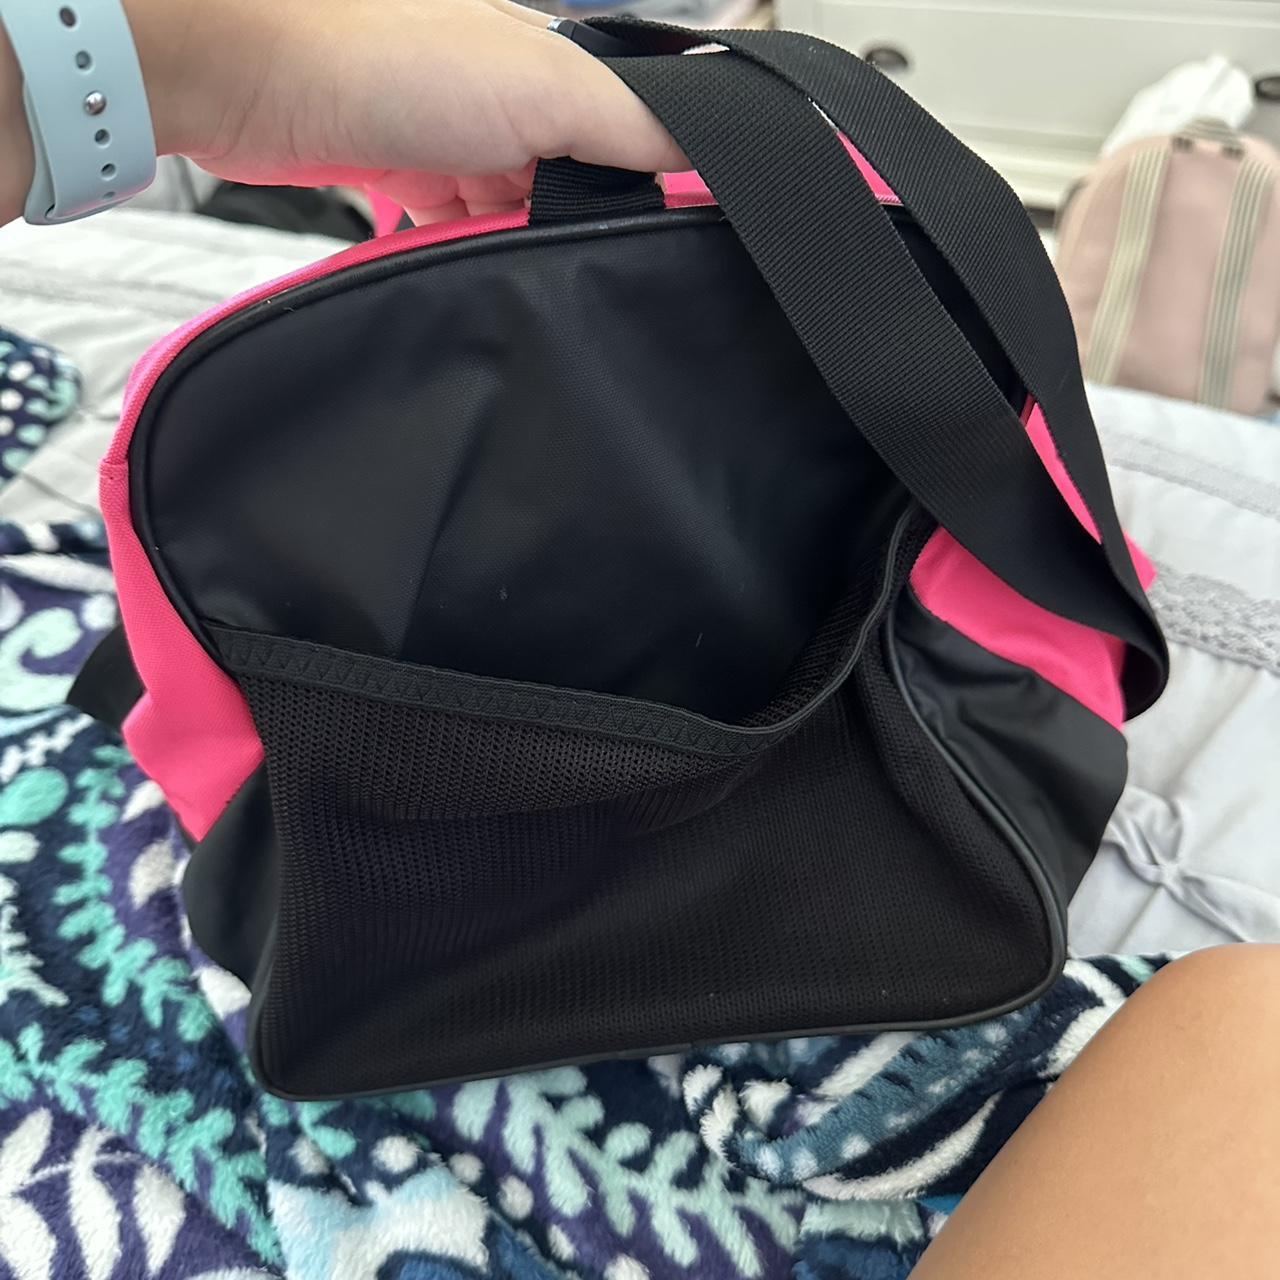 pink under armor backpack - Depop